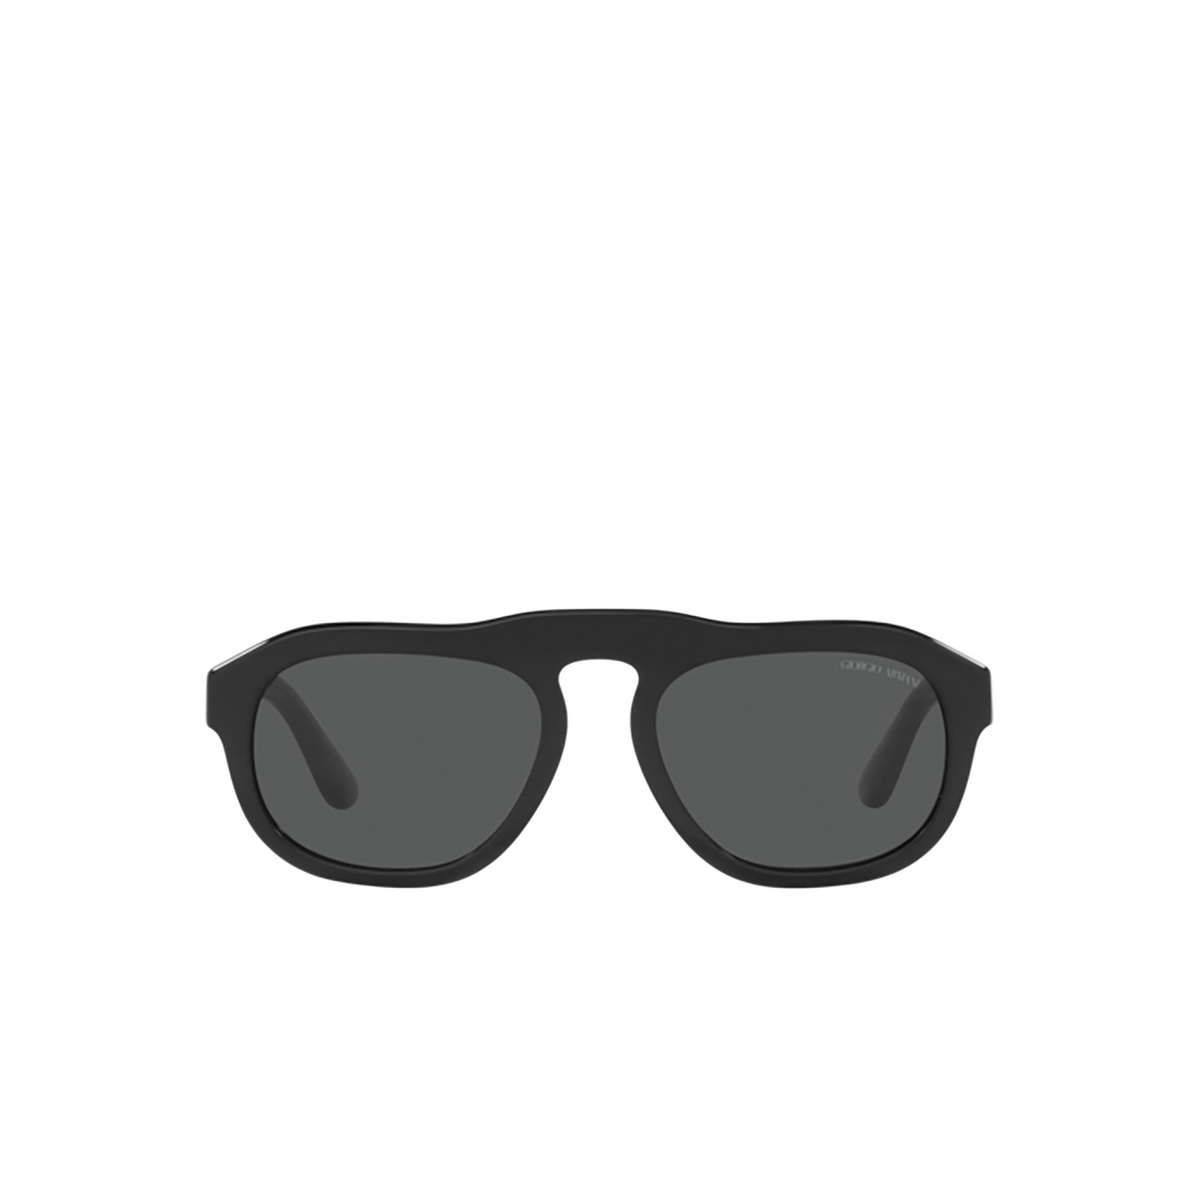 Giorgio Armani AR8173 Sunglasses 500187 Black - front view